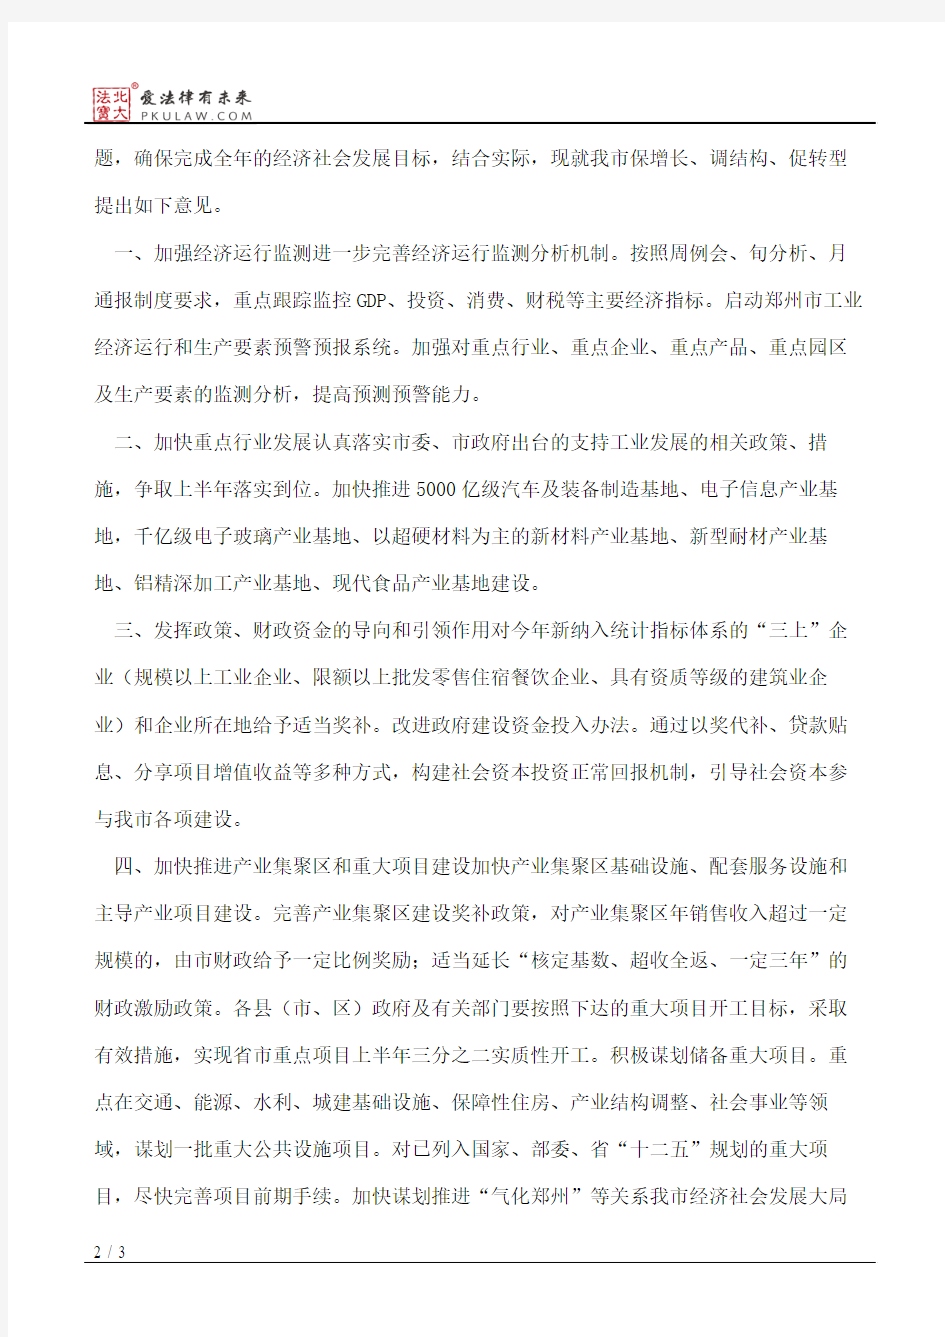 郑州市人民政府关于印发郑州市保增长调结构促转型若干意见的通知